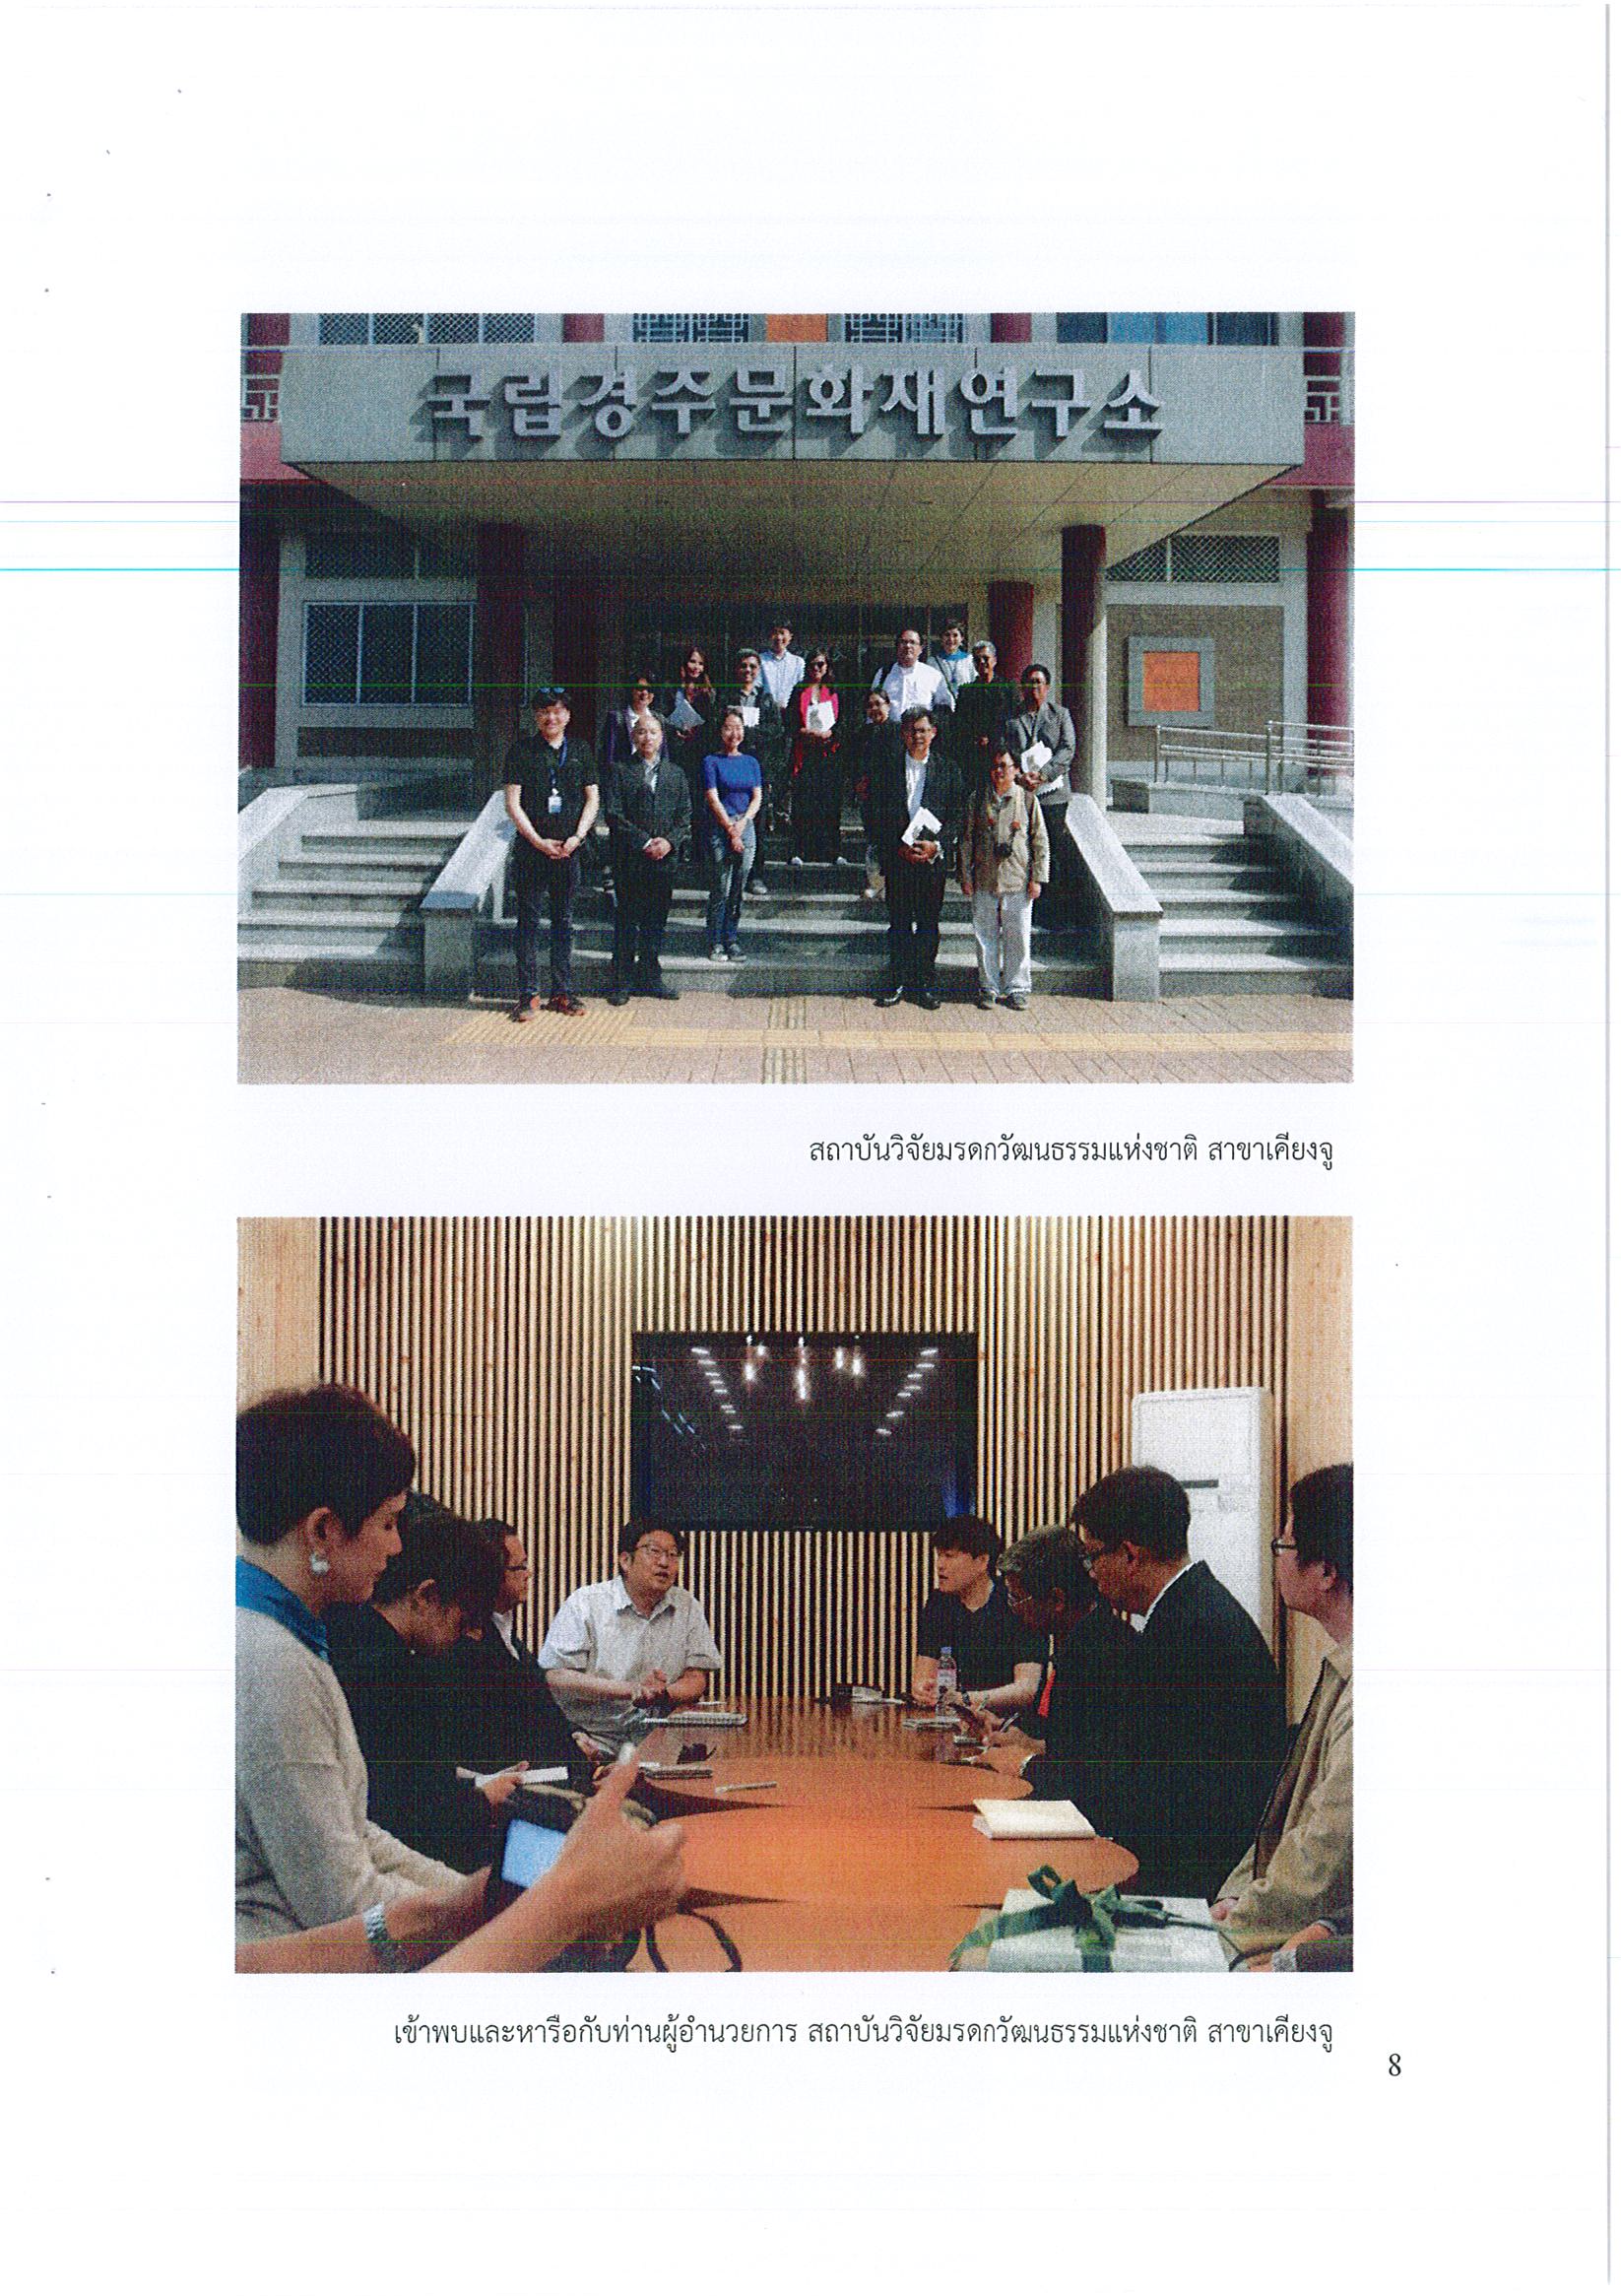 รายงานการเดินทางไปราชการ ณ สาธารณรัฐเกาหลี ระหว่างวันที่ 13 – 20 พฤษภาคม 2561 โครงการศึกษาดูงานด้านการอนุรักษ์โบราณสถานประเภทหินและการฝึกอบรมสัมมนาทางวิชาการ ภายใต้กรอบความร่วมมือระหว่างสถาบันวิจัยมรดกทางวัฒนธรรมแห่งชาติสาธารณรัฐเกาหลีและกรมศิลปากร